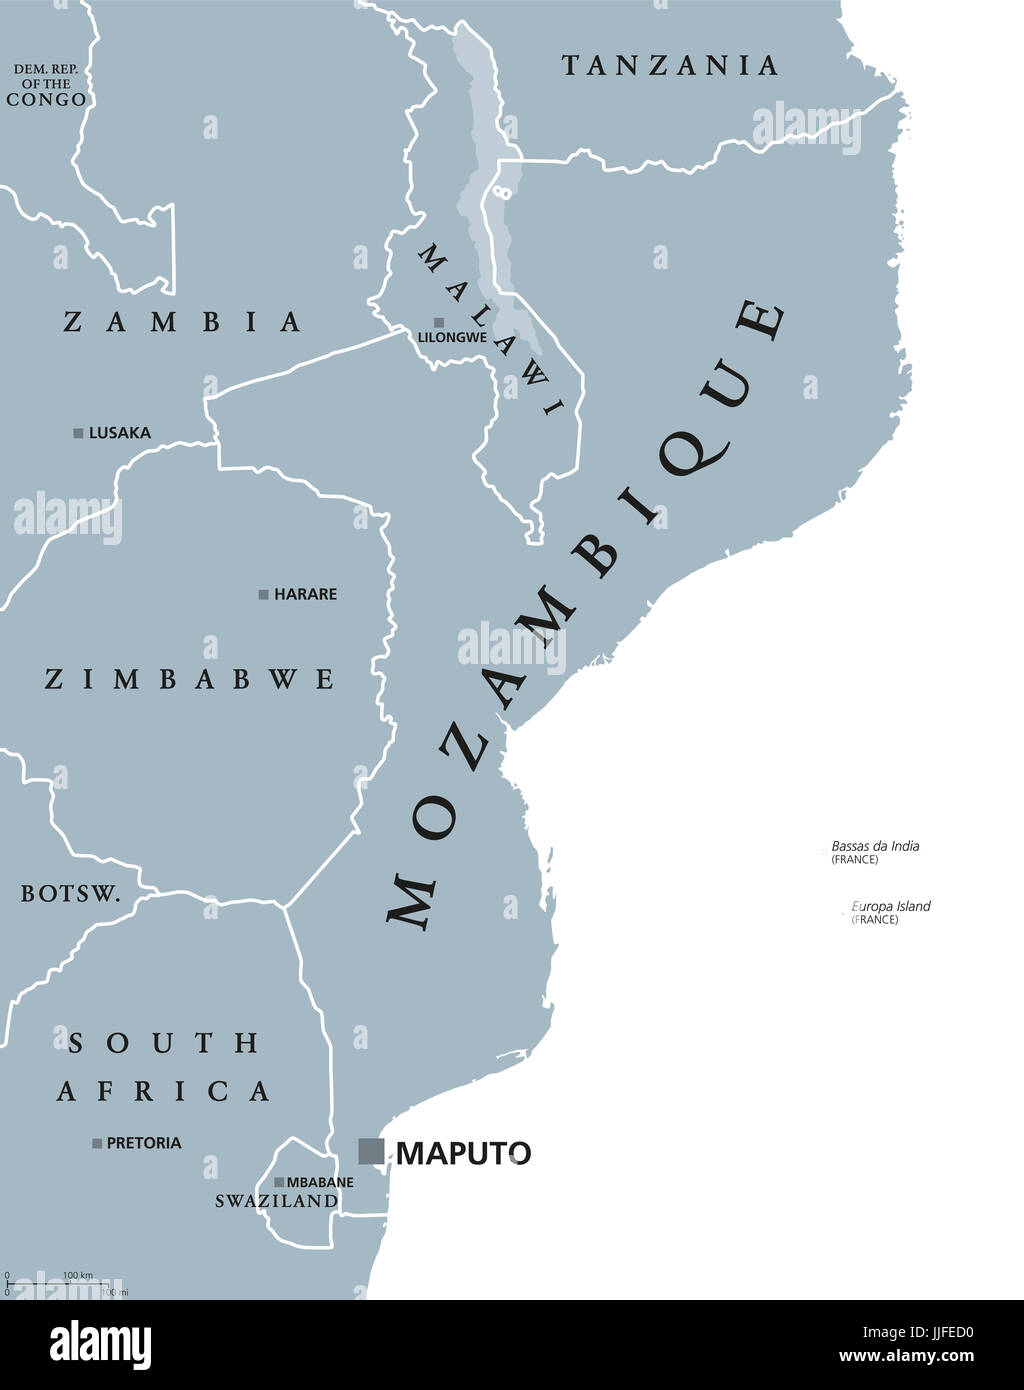 Carte politique du Mozambique avec capital Maputo. République et pays en Asie du Sud bordé par l'Océan Indien. Gris illustration isolé. Banque D'Images